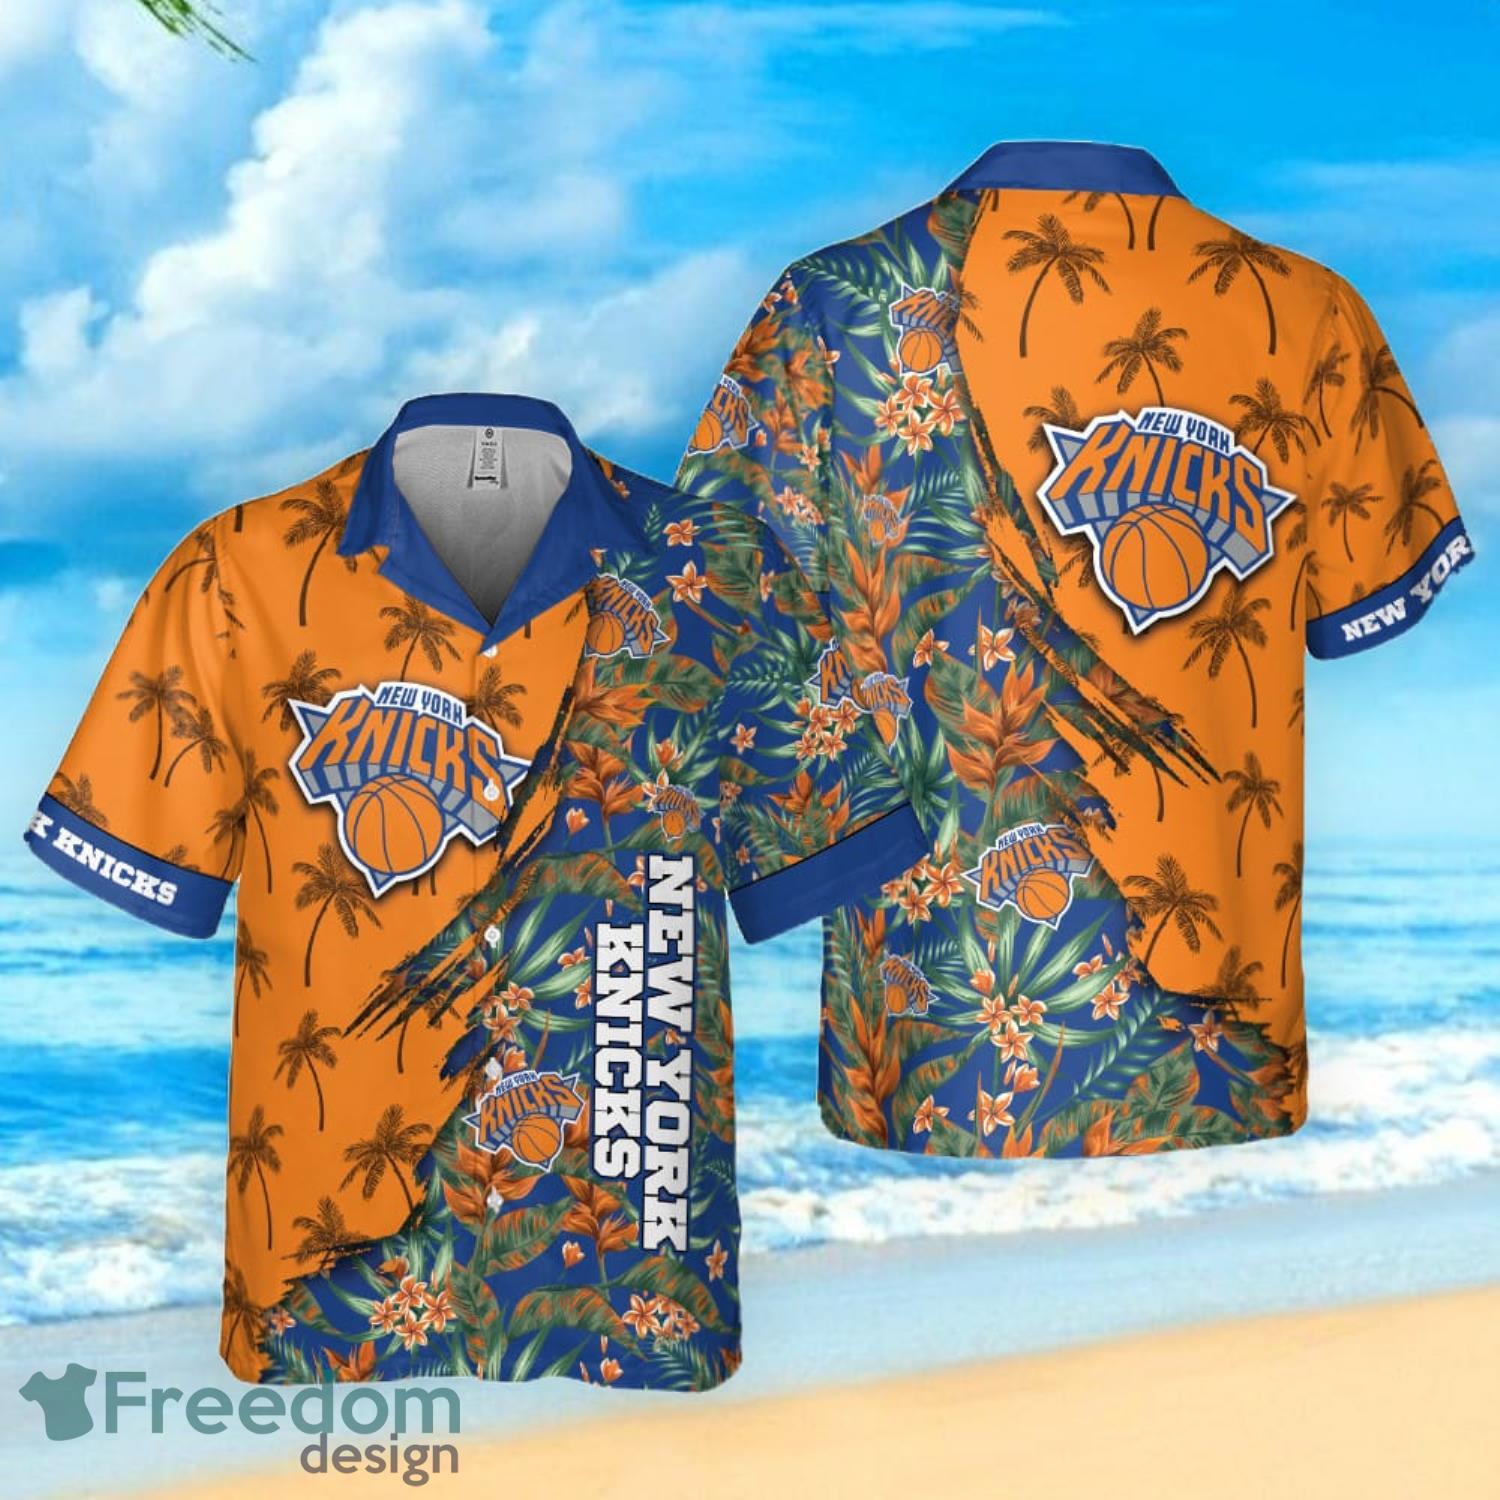 New York Knicks NBA Playoffs Design 6 Beach Hawaiian Shirt Men And Women  For Fans Gift - Banantees